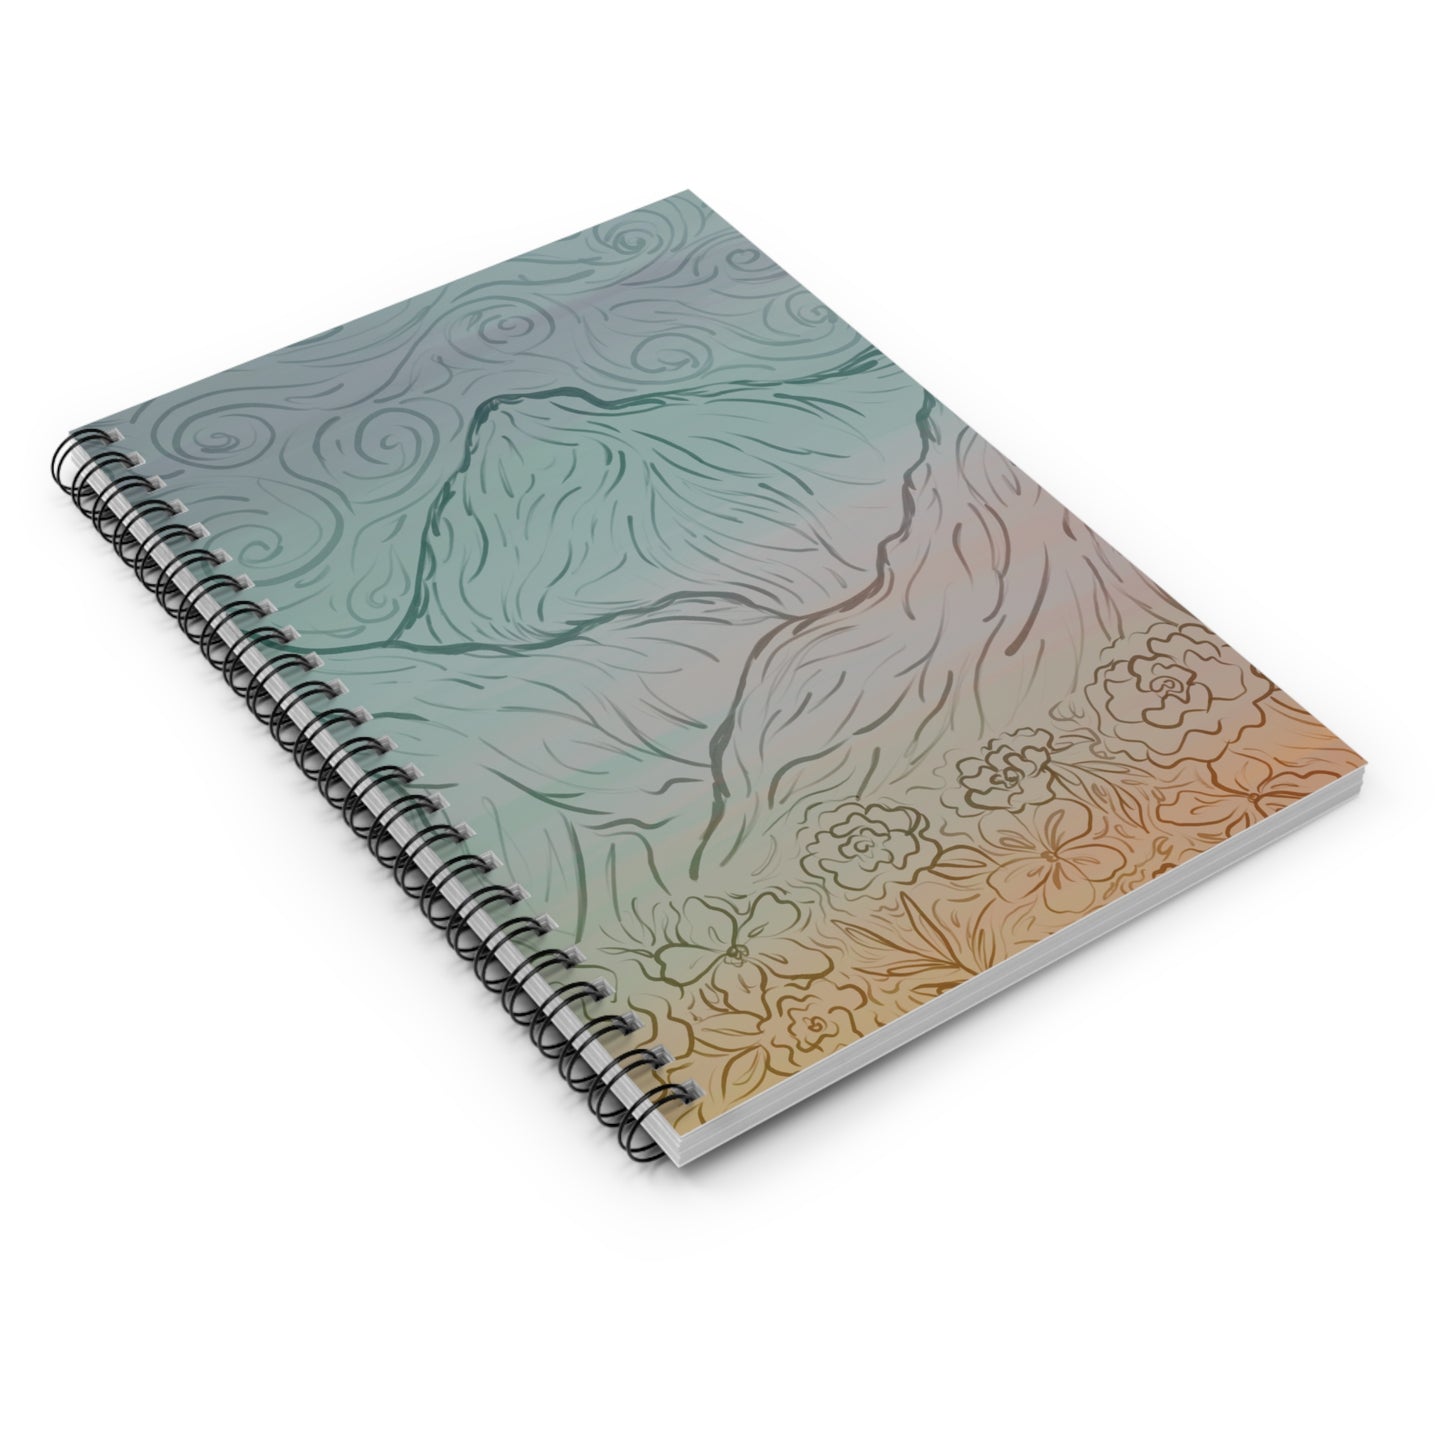 Ombré mountain notebook